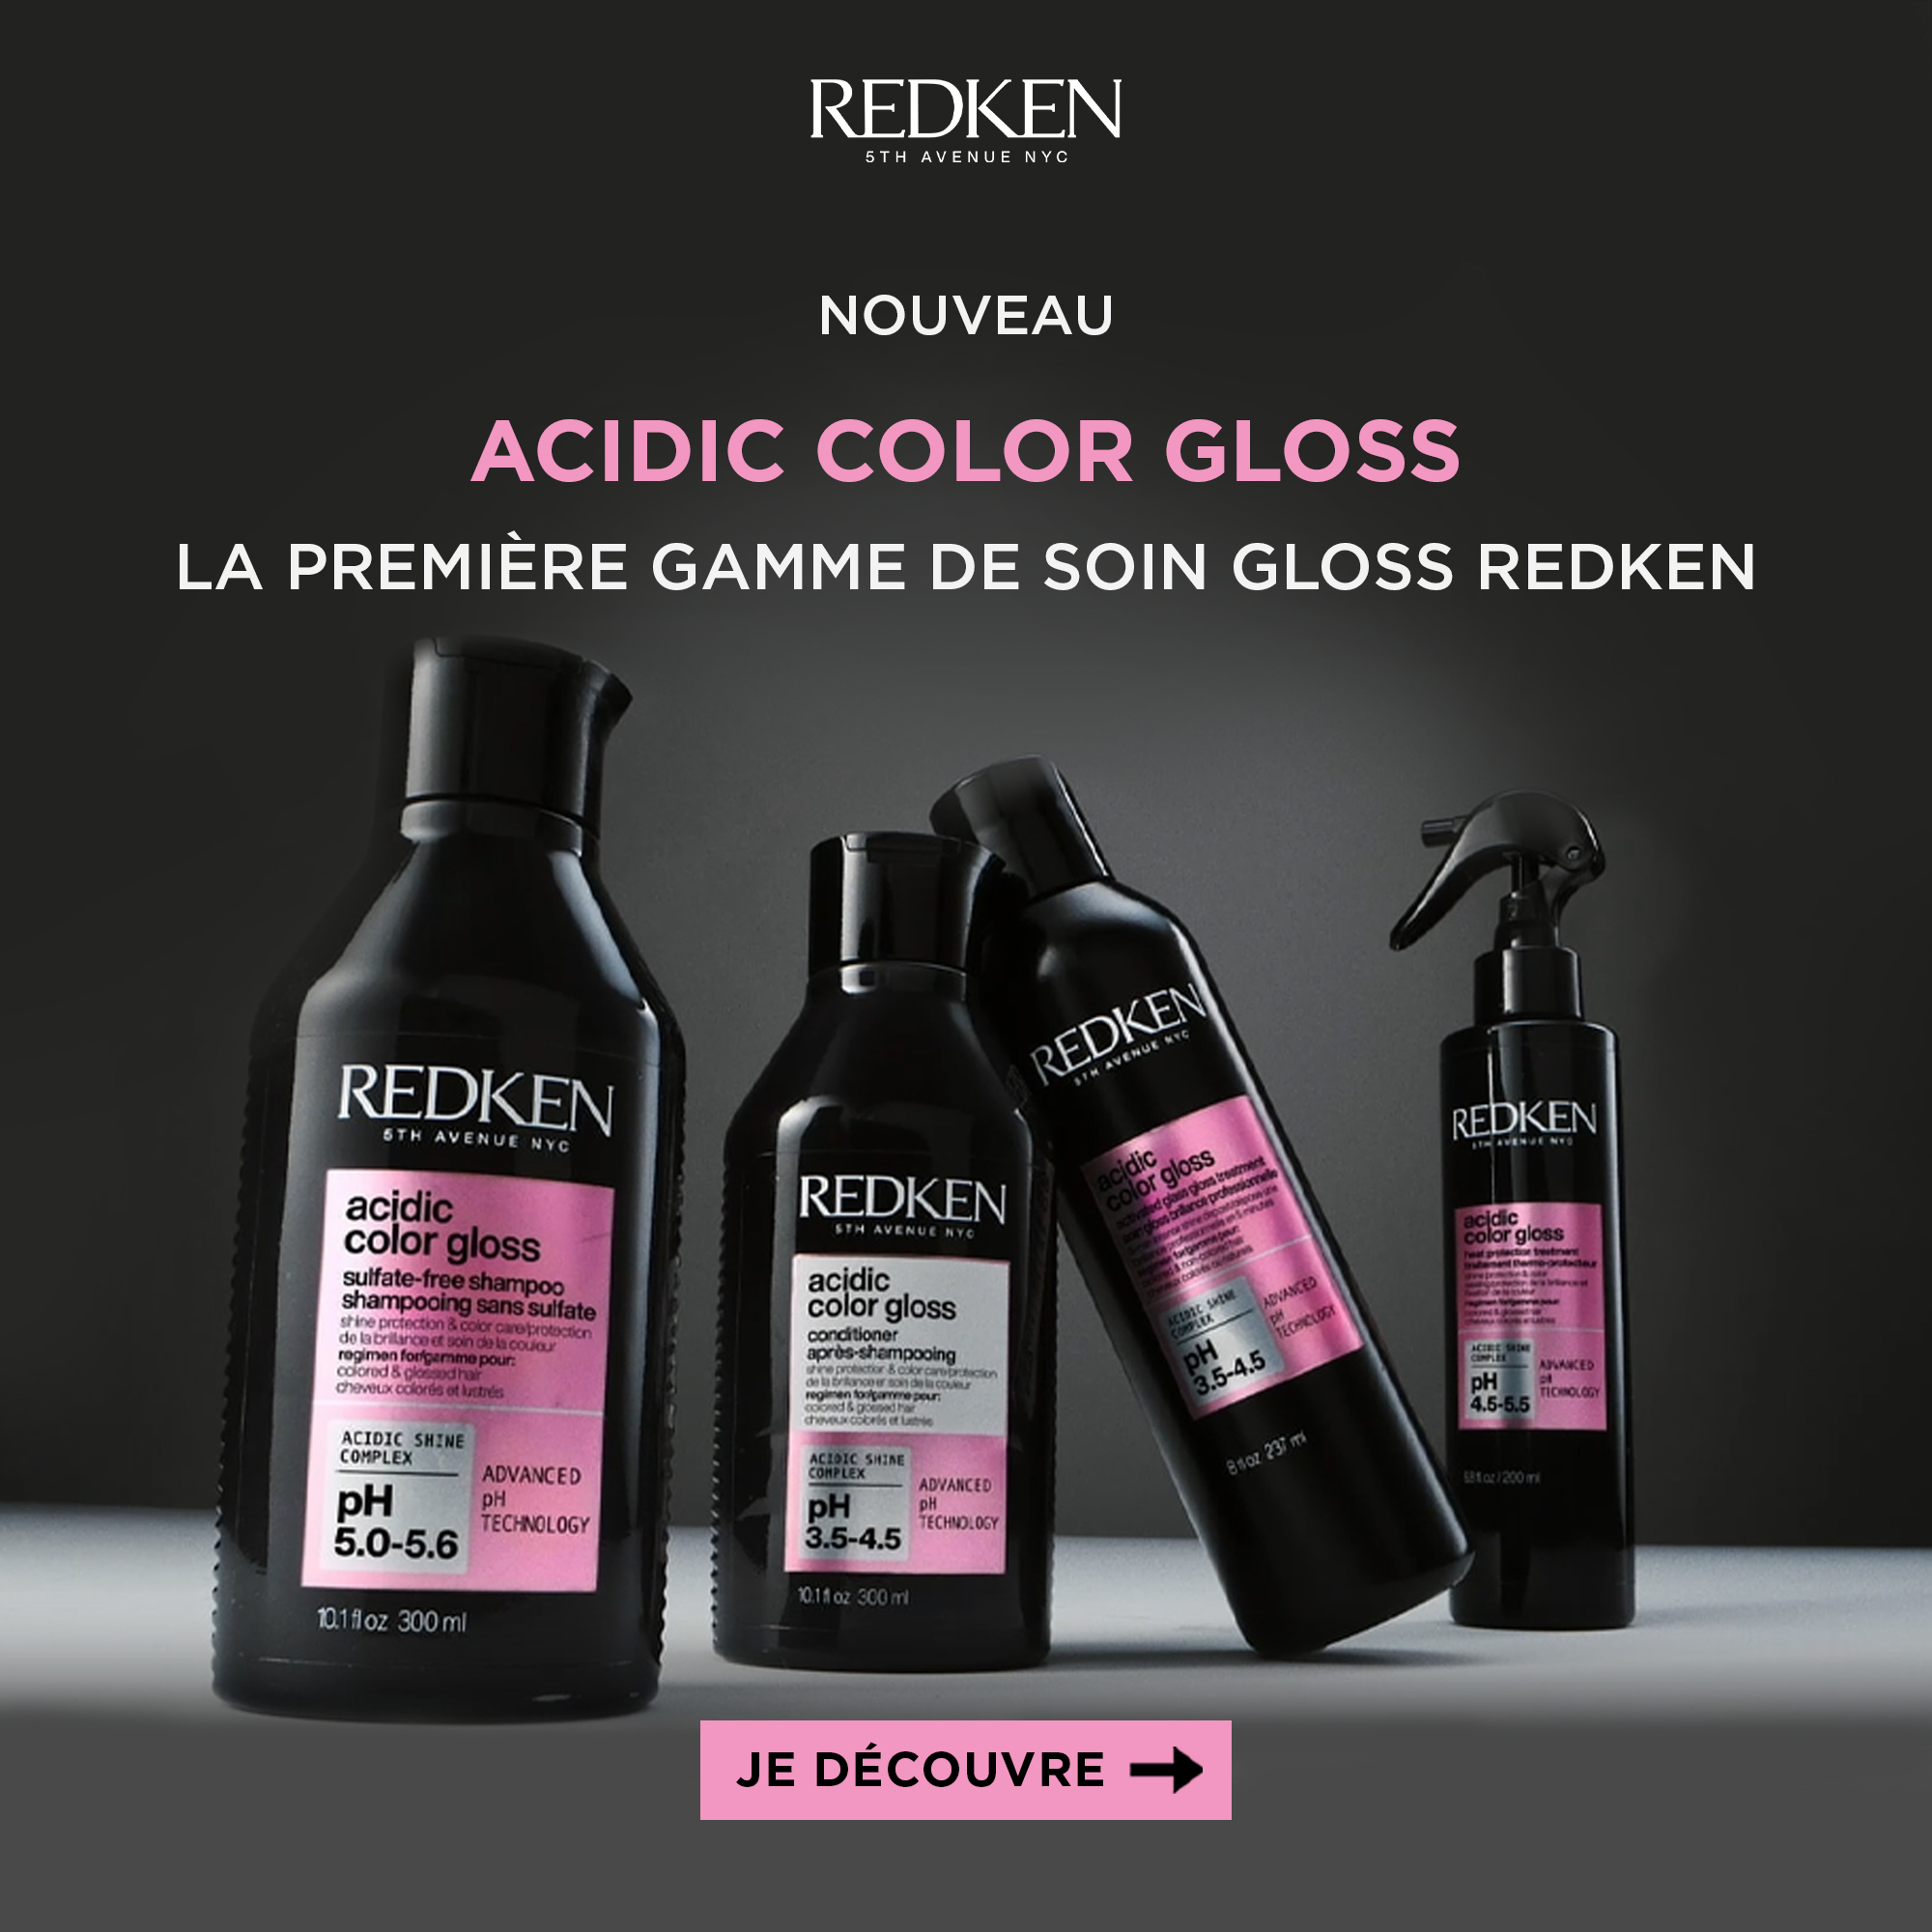 Nouvelle gamme Acidic Color Gloss de Redken